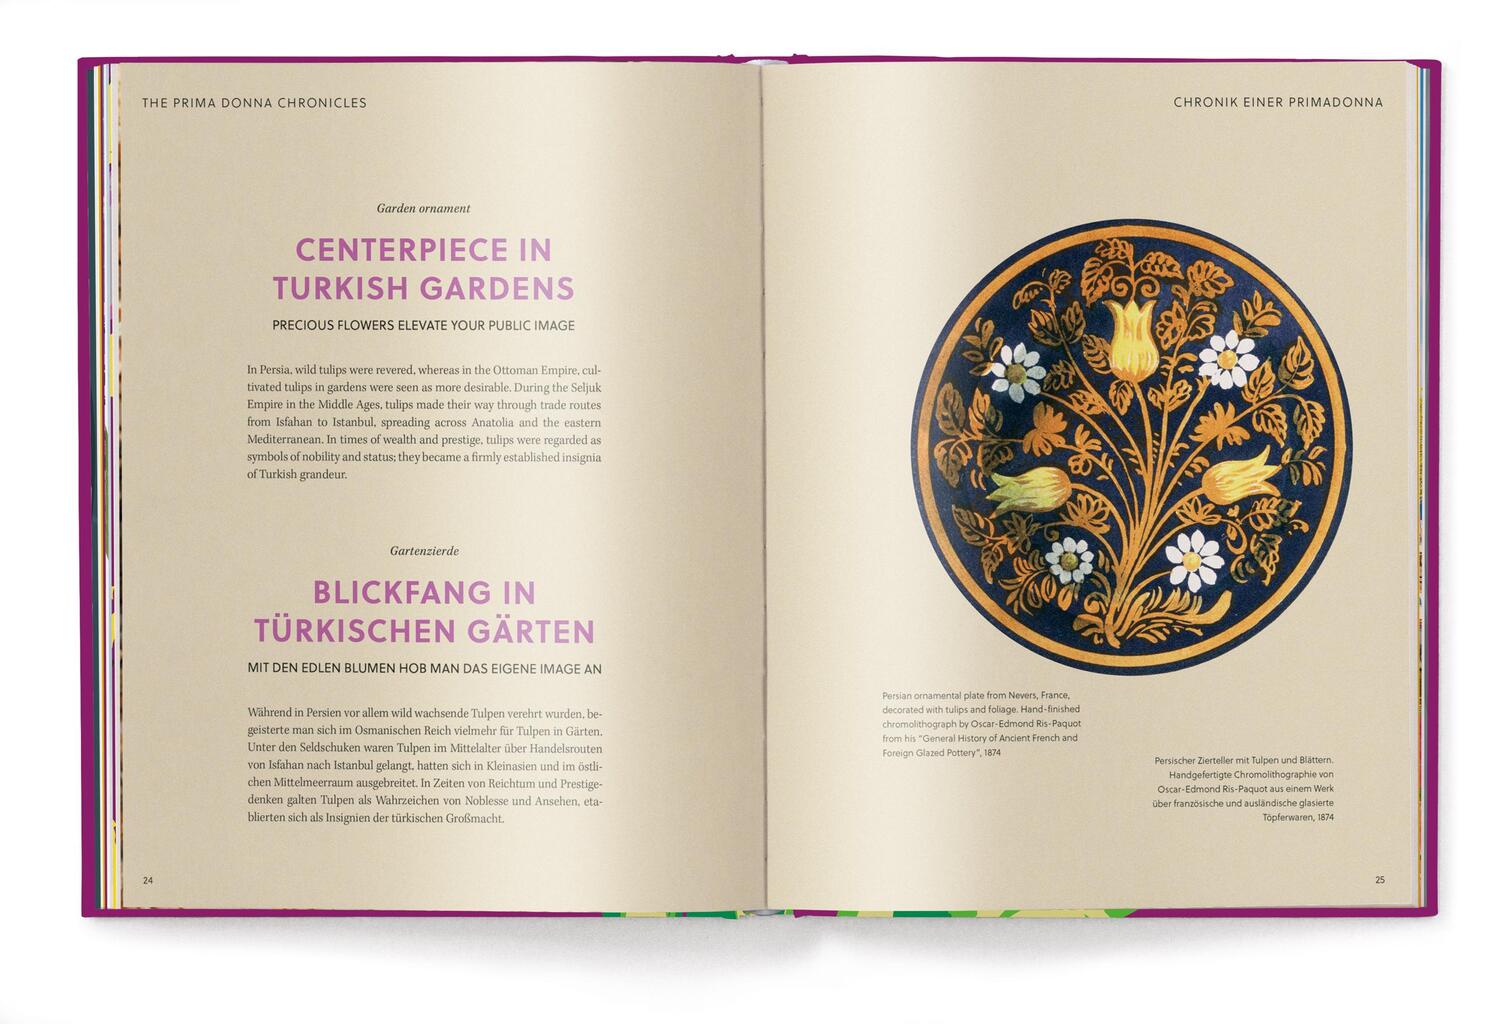 Bild: 9783961715428 | Floramour: Tulpen | Karin Greiner (u. a.) | Buch | 208 S. | Deutsch